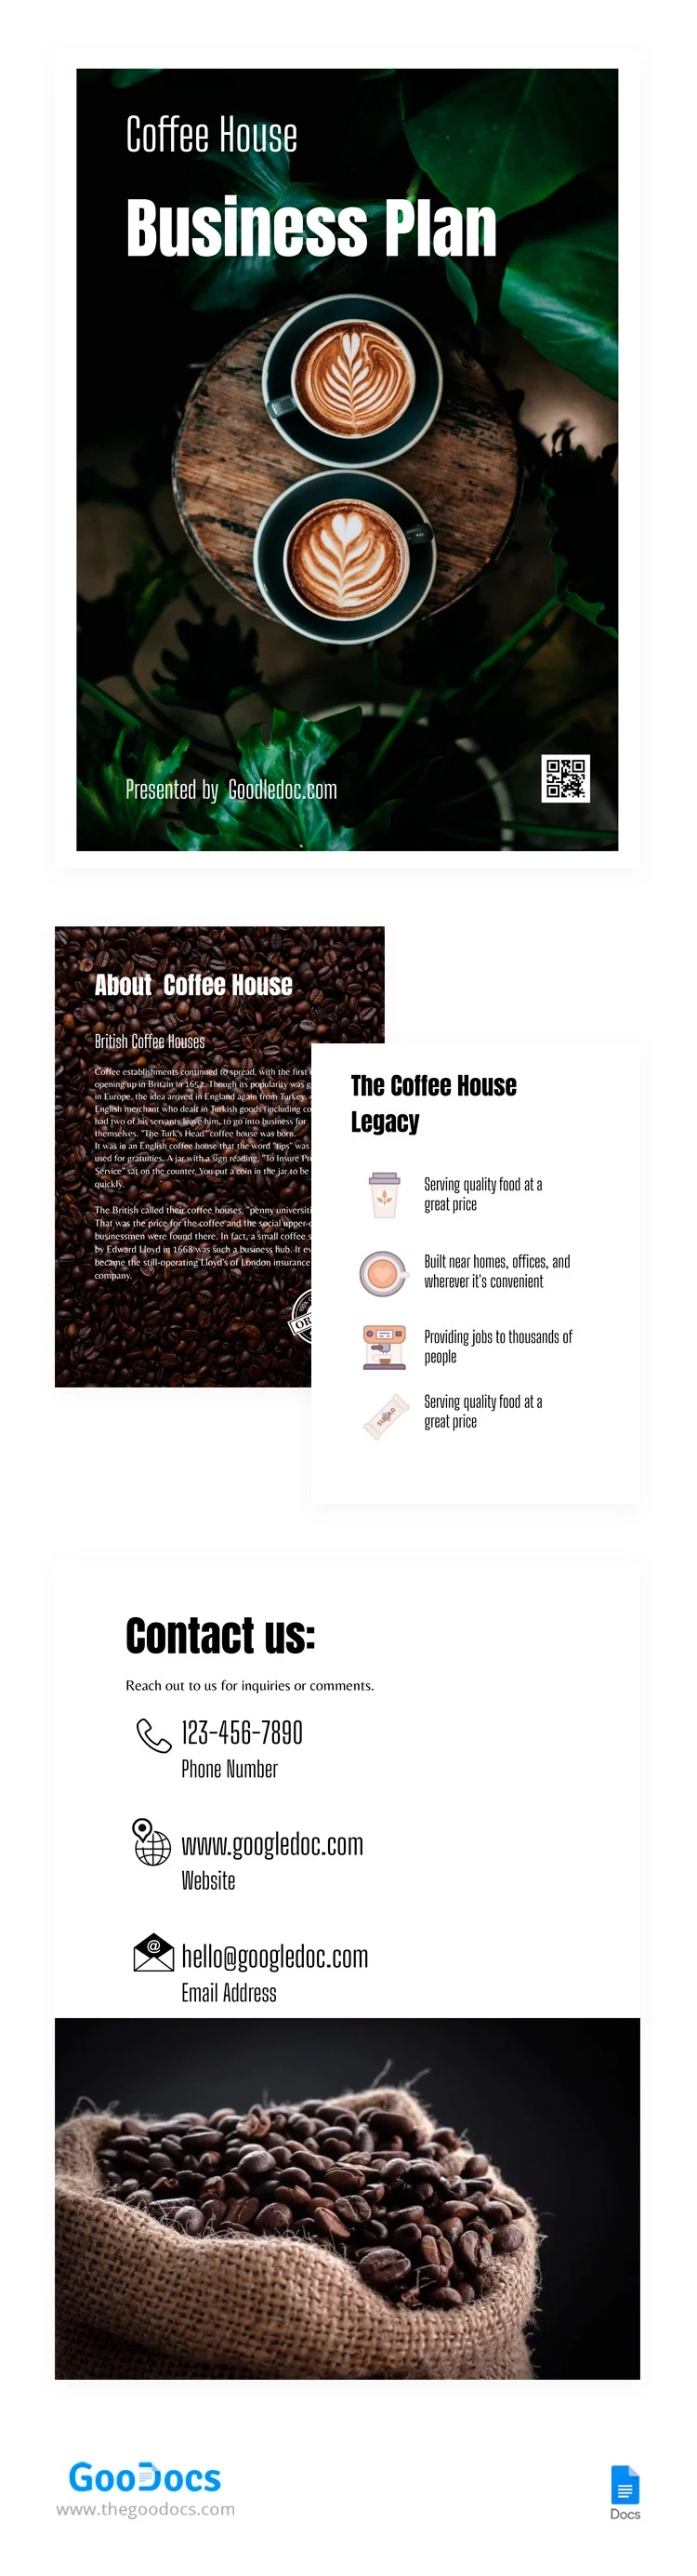 Plano de negócios para uma cafeteria. - free Google Docs Template - 10062909